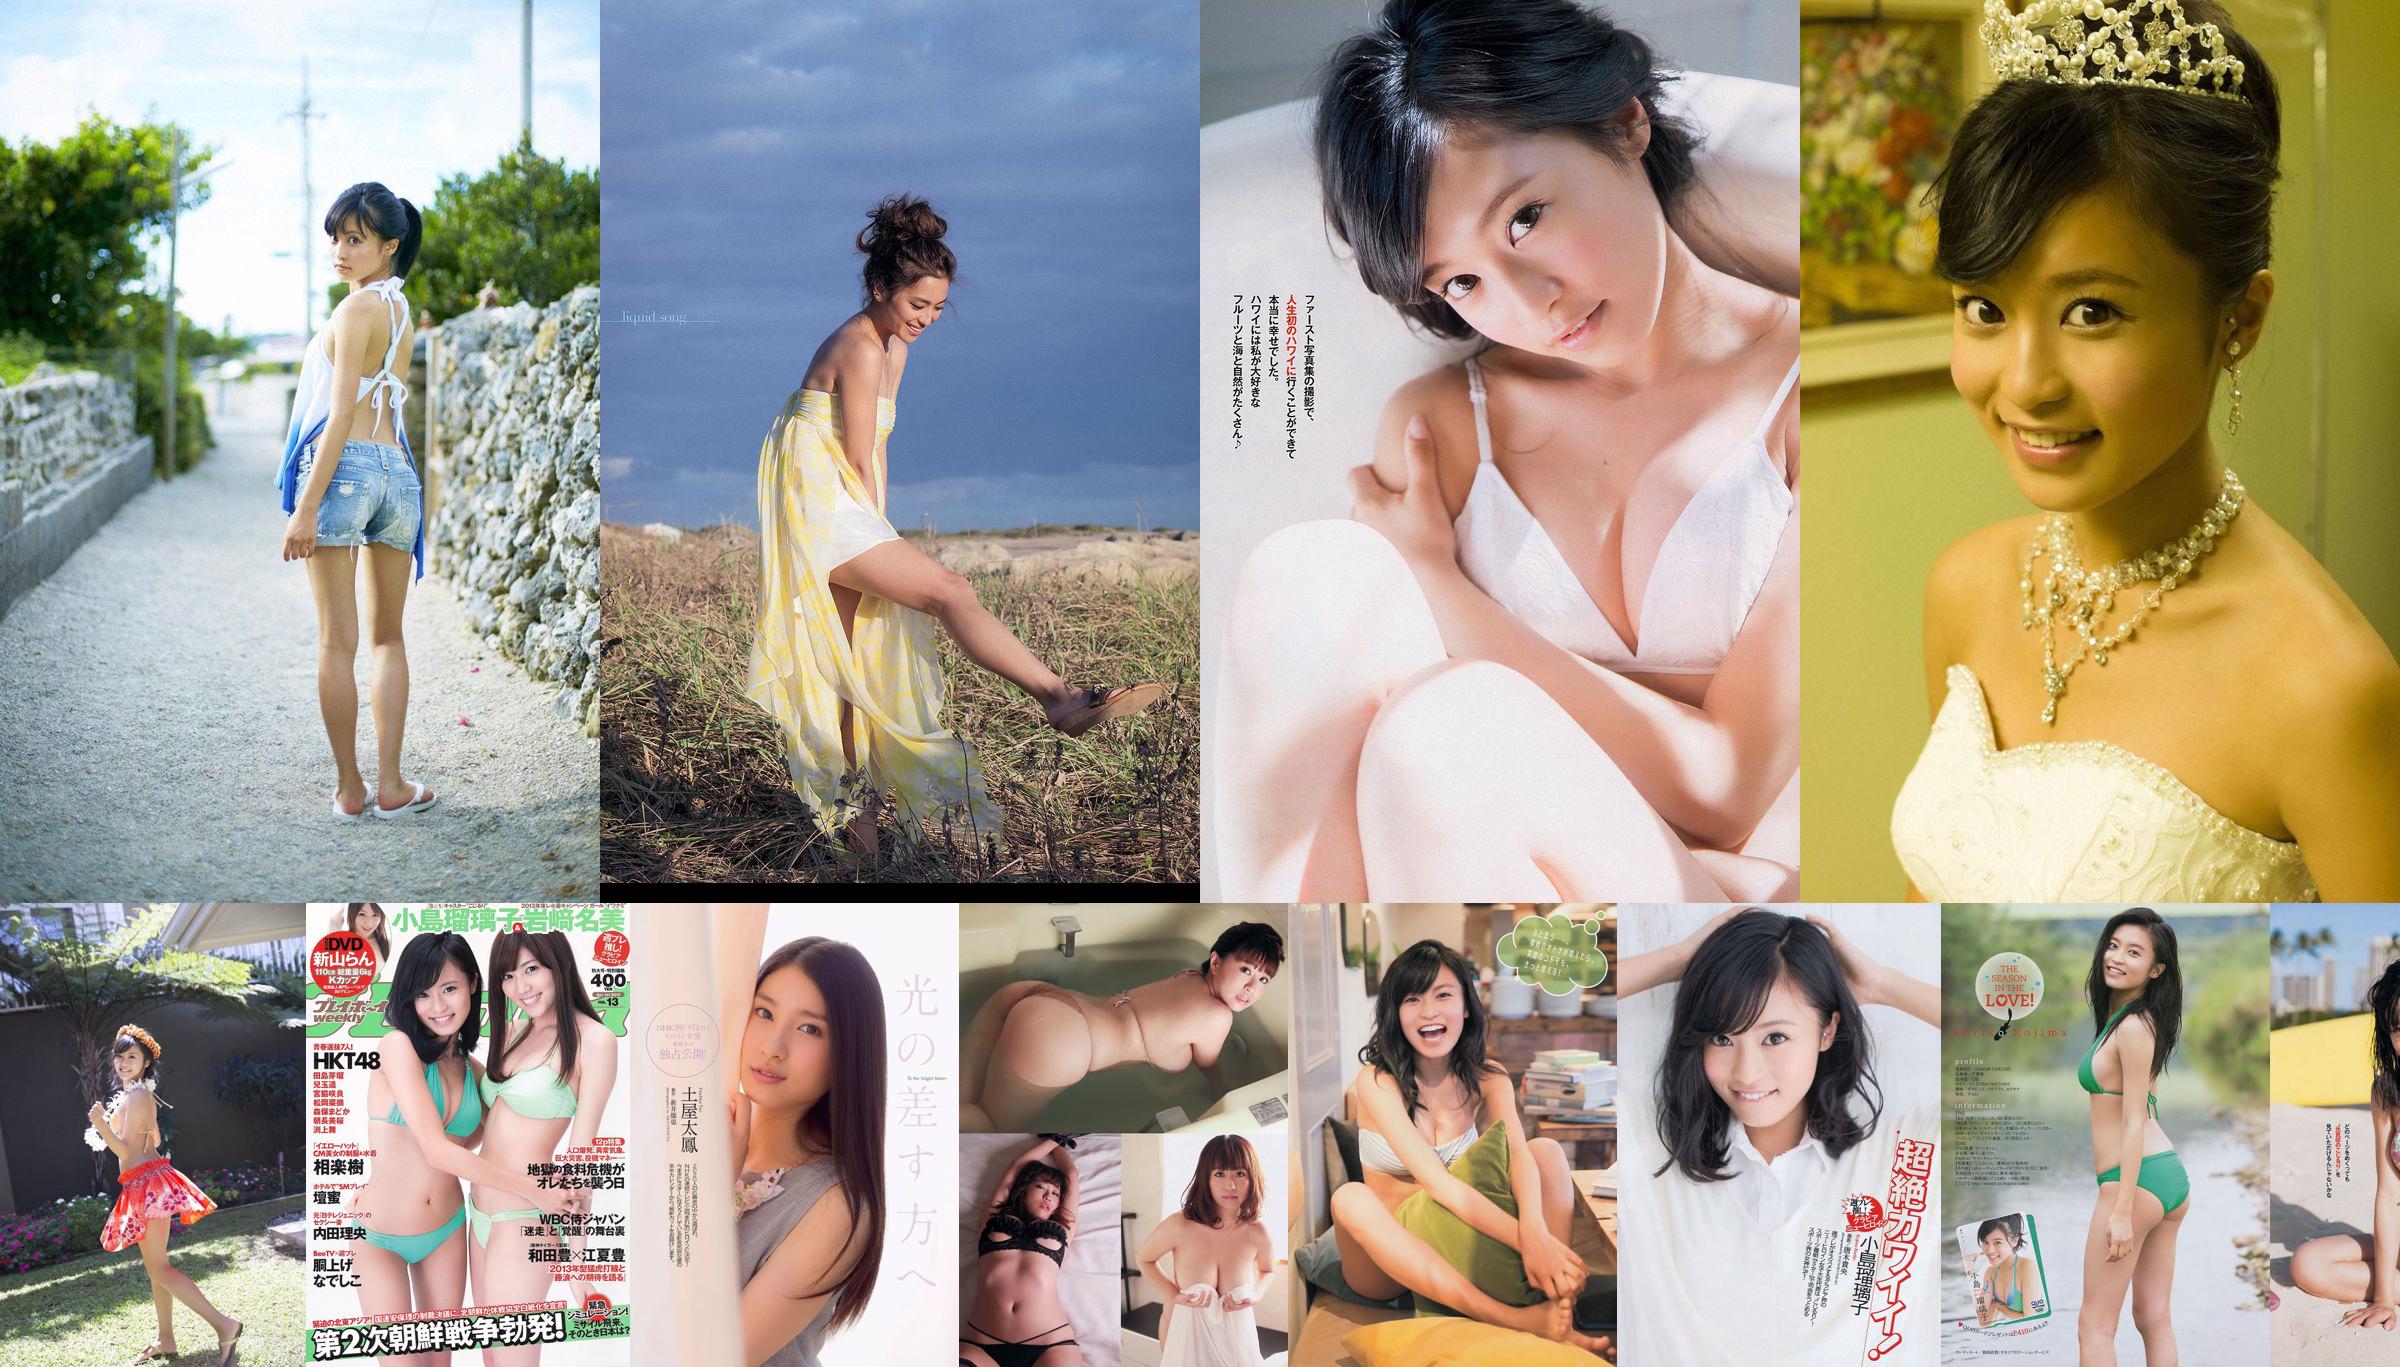 [Young Magazine] Kojima Ruriko Mai Miyagi 2014 Magazine photo n ° 11 No.3e9b9a Page 5